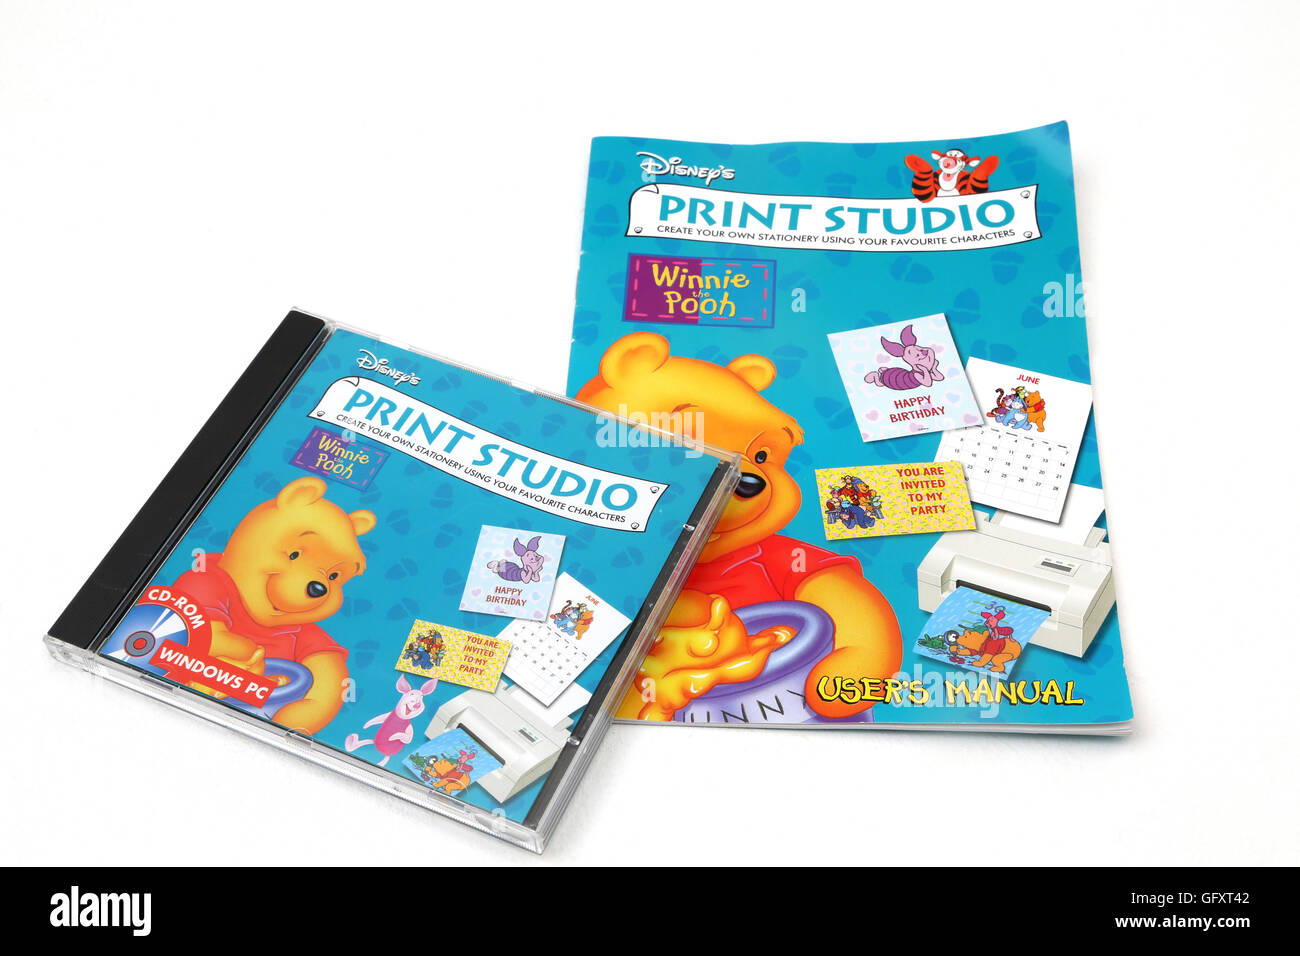 Winnie the Pooh - Studio di stampa CD Rom e dell'utente Manuel Foto Stock